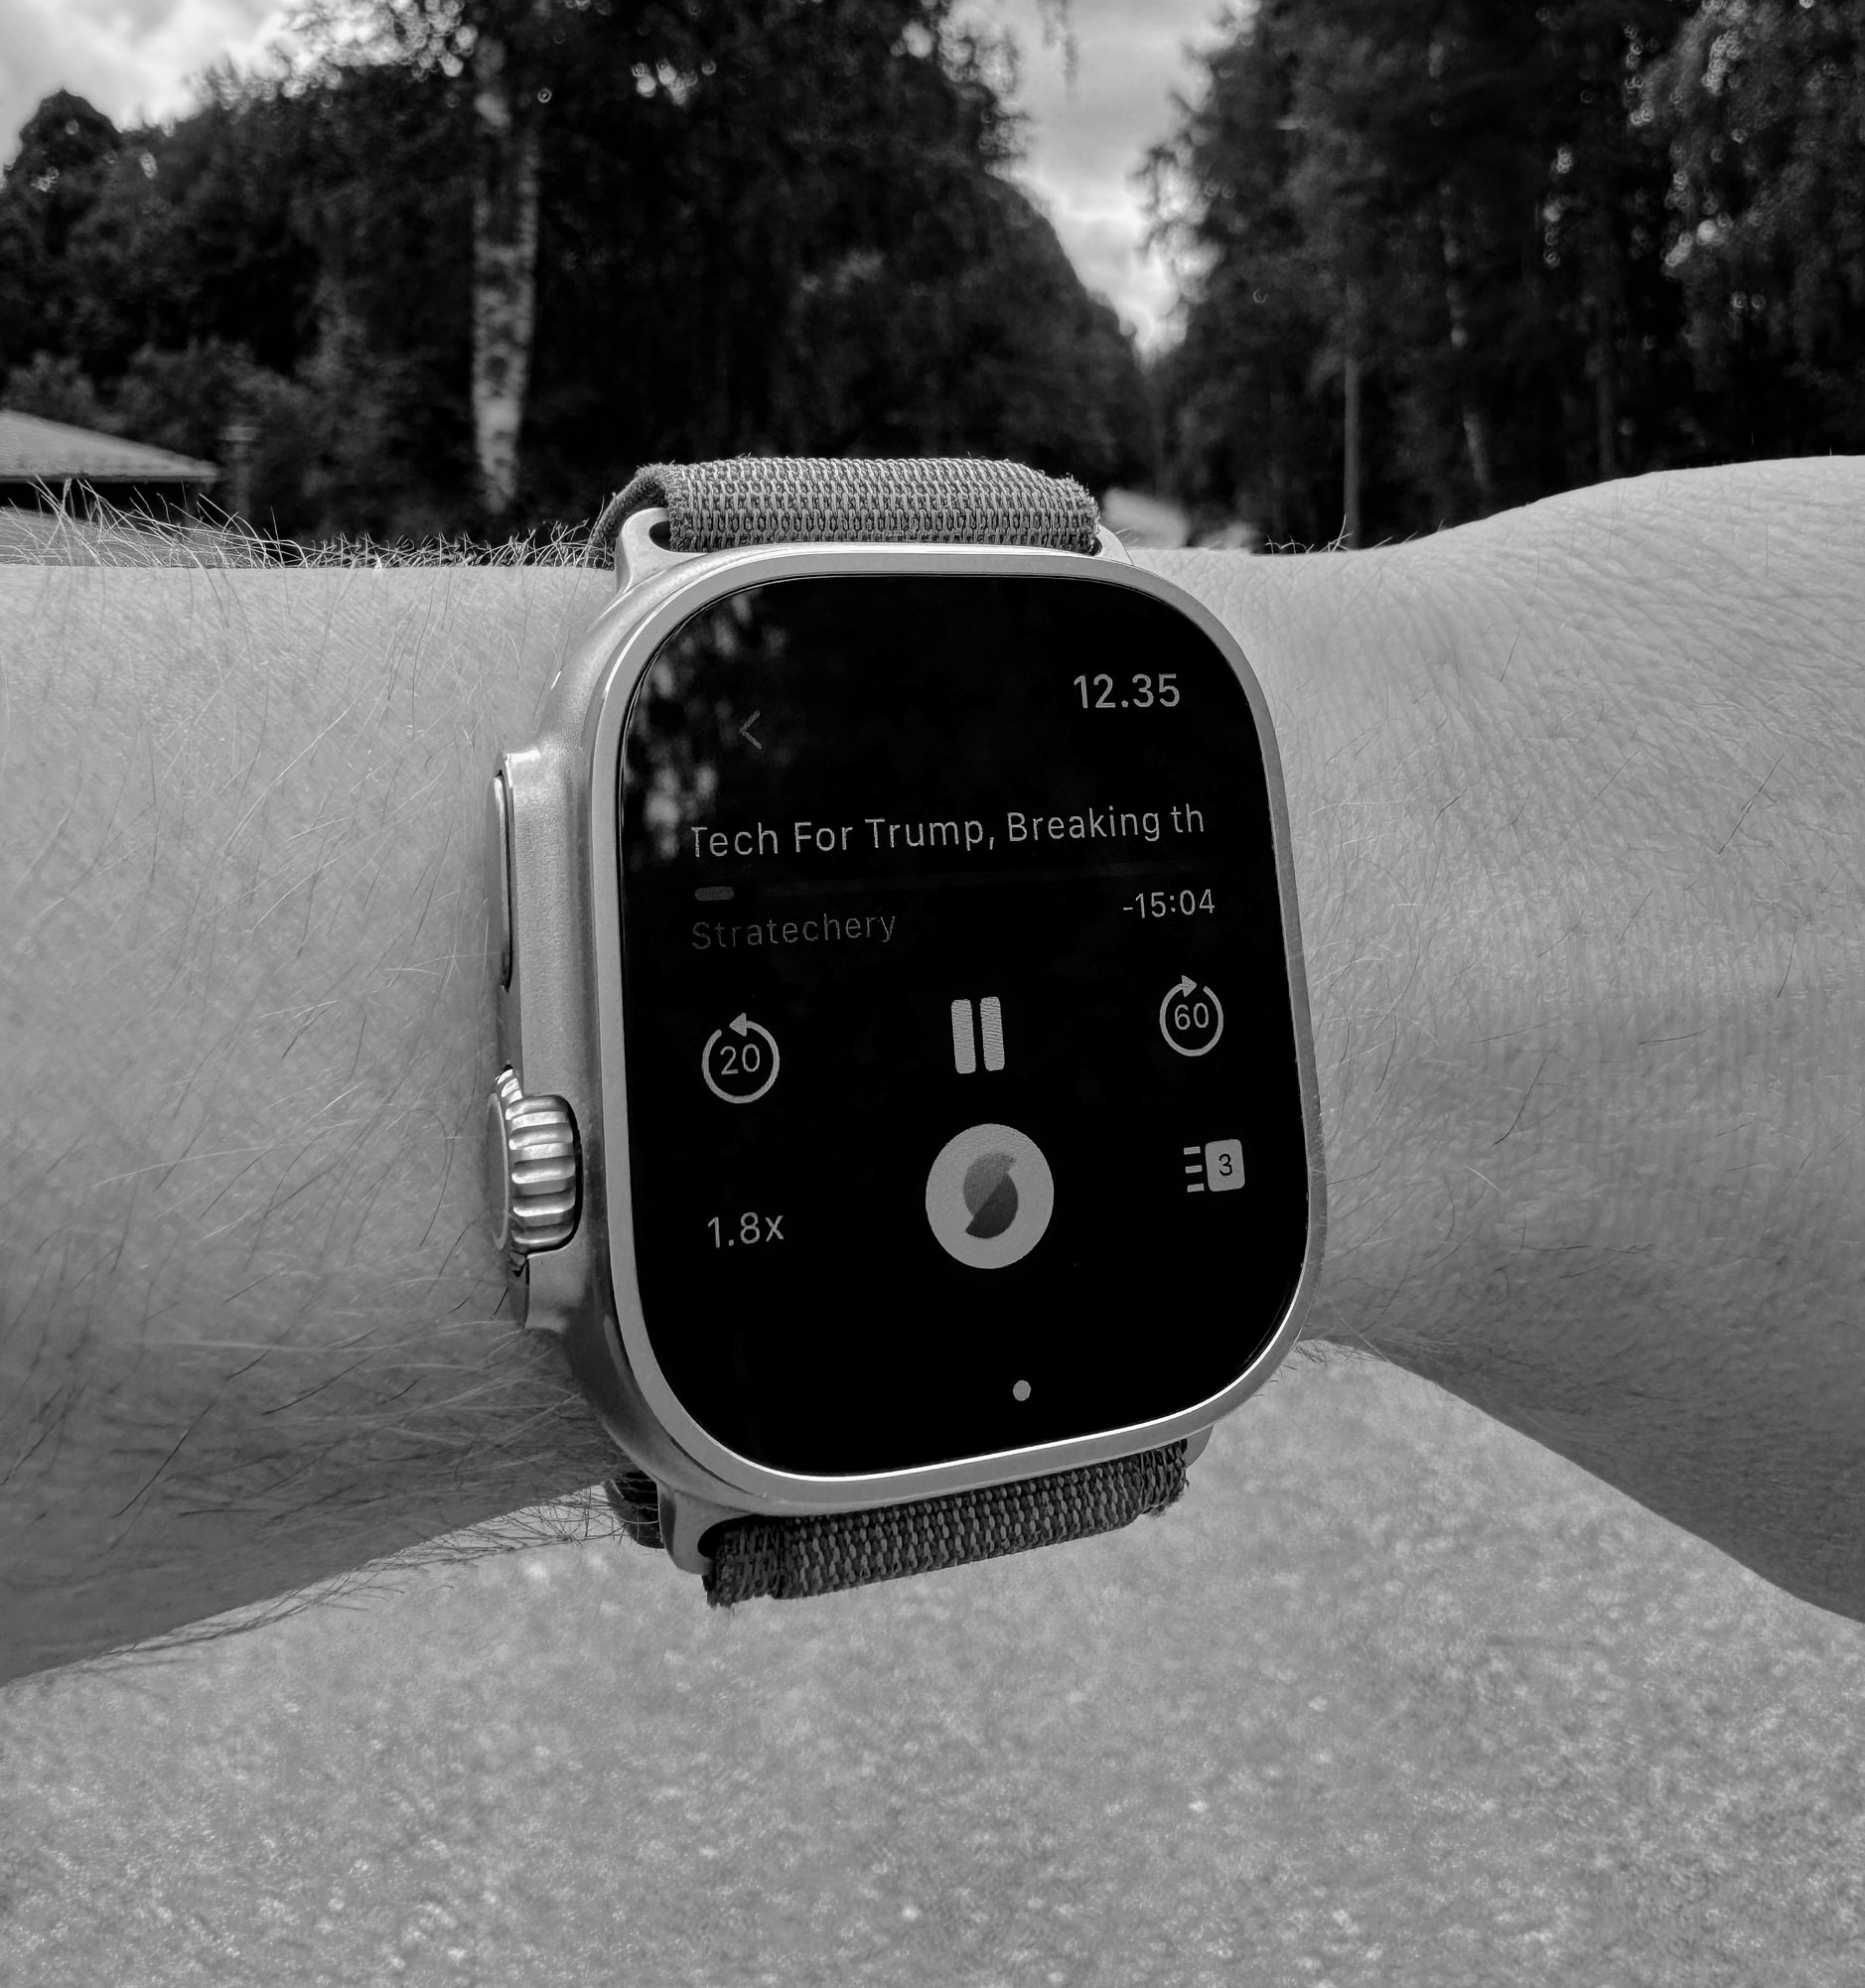 Auf dem Bild ist eine Apple Watch zu sehen, die einen Podcast mit dem Titel "Tech For Trump" von Stratechery abspielt. Die Uhr zeigt die Uhrzeit 12:35 an und befindet sich an einem Handgelenk vor einer bewaldeten Hintergrundszene.